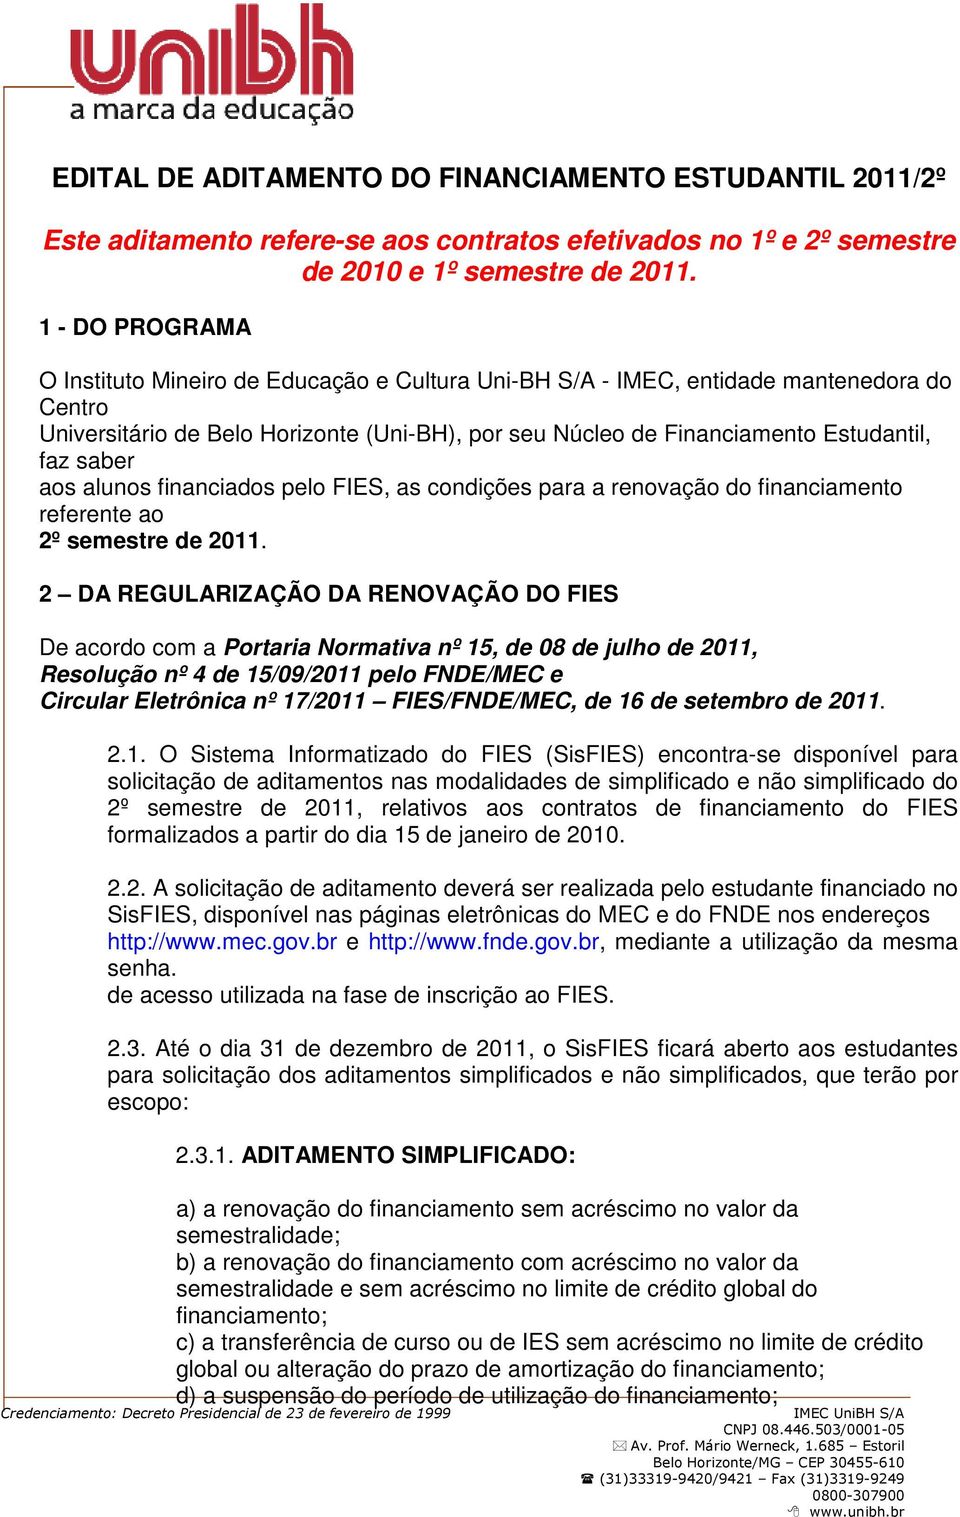 saber aos alunos financiados pelo FIES, as condições para a renovação do financiamento referente ao 2º semestre de 2011.